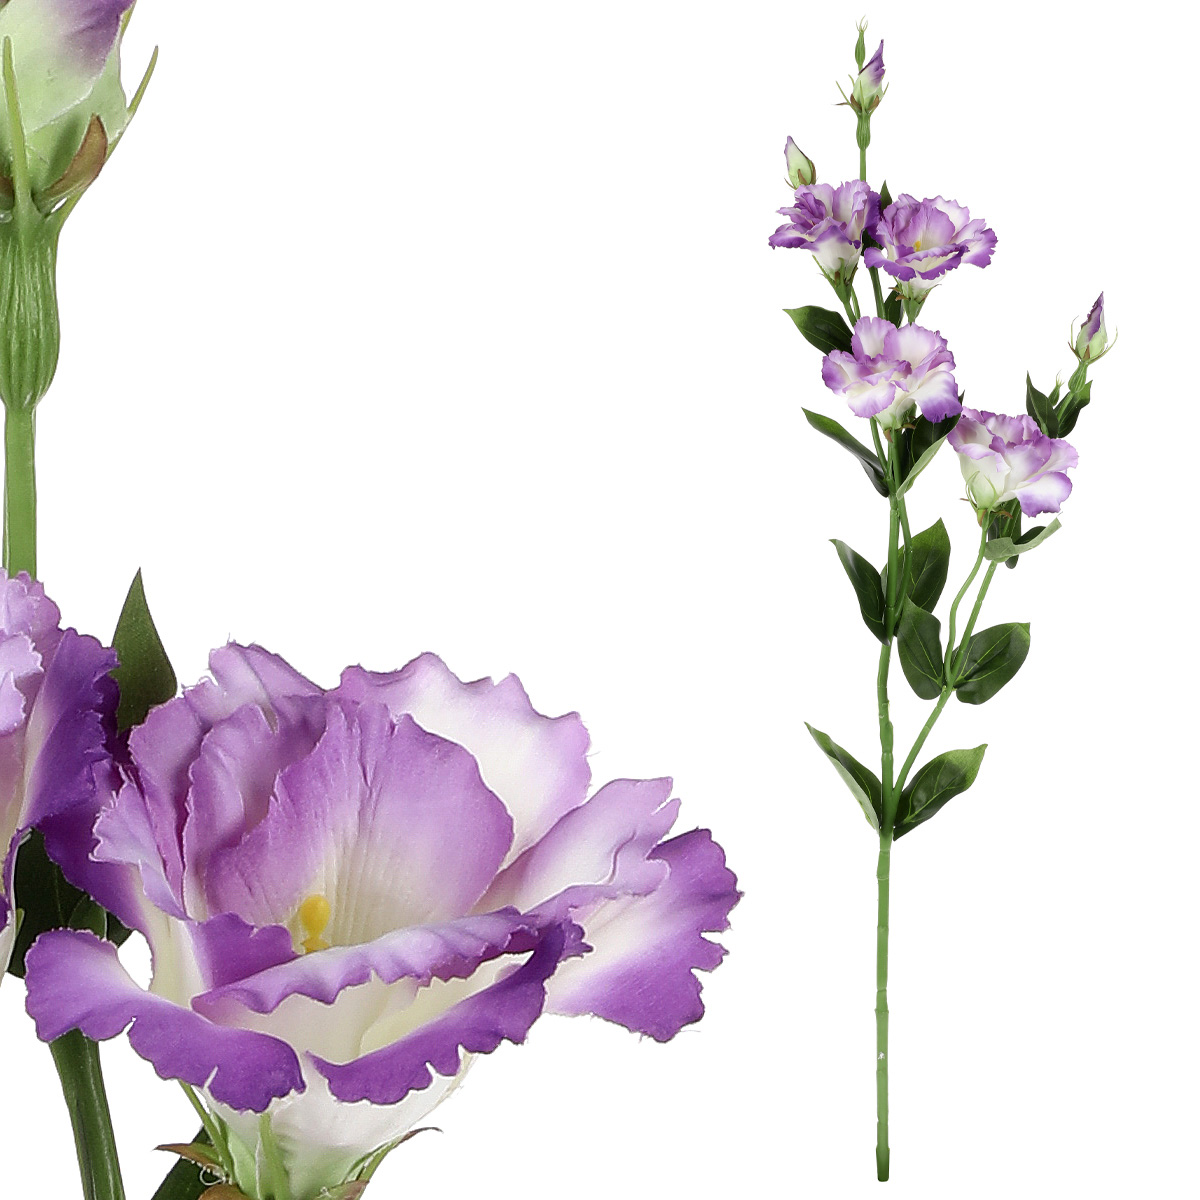 Eustoma - umělá květina, barva fialová.